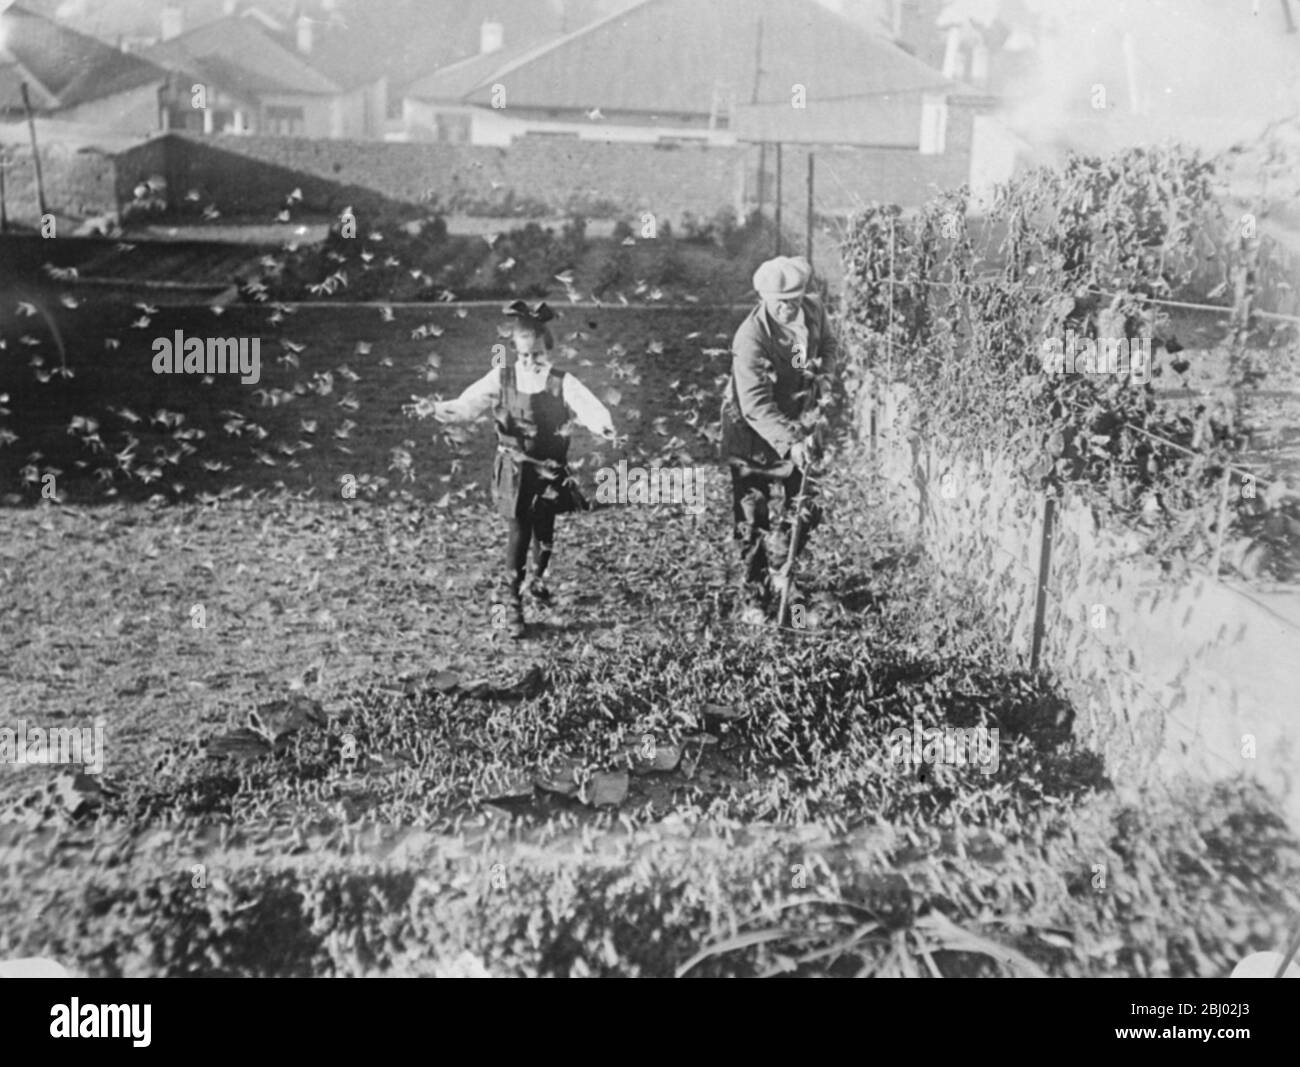 La lutte des agriculteurs avec d'énormes nuages de criquets . Des cultures florissantes détruites dans le Transvaal occidental - des Locustes accrochés aux murs d'une maison à Johannesburg - 22 mai 1923 Banque D'Images